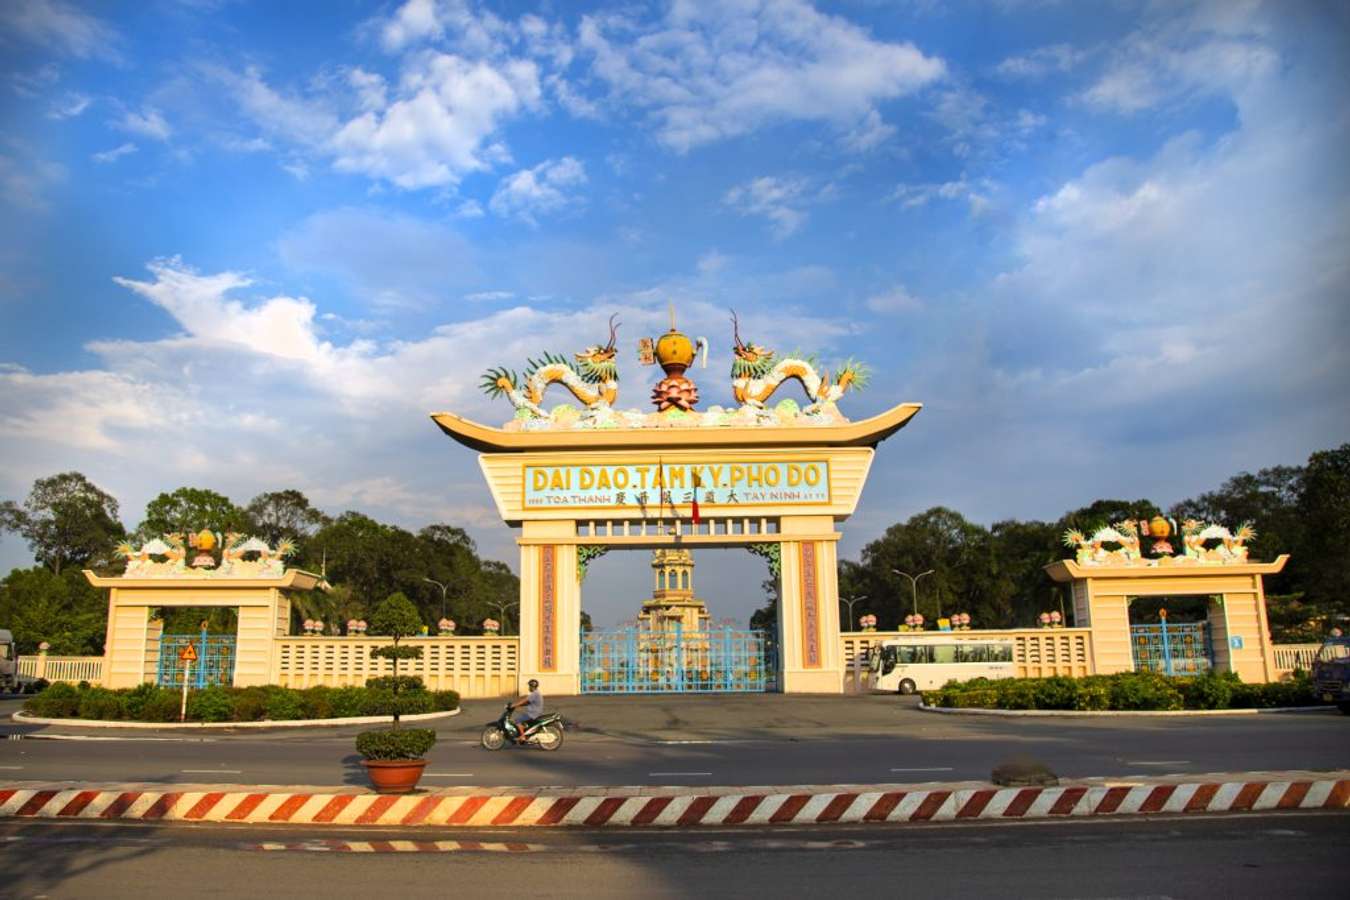 Kiến trúc tôn giáo Tây Ninh mang đậm nét đặc trưng của vùng đất Nam Bộ. Bạn sẽ được trải nghiệm sự độc đáo và phong phú của kiến trúc tôn giáo trong một môi trường yên bình và thanh tịnh.